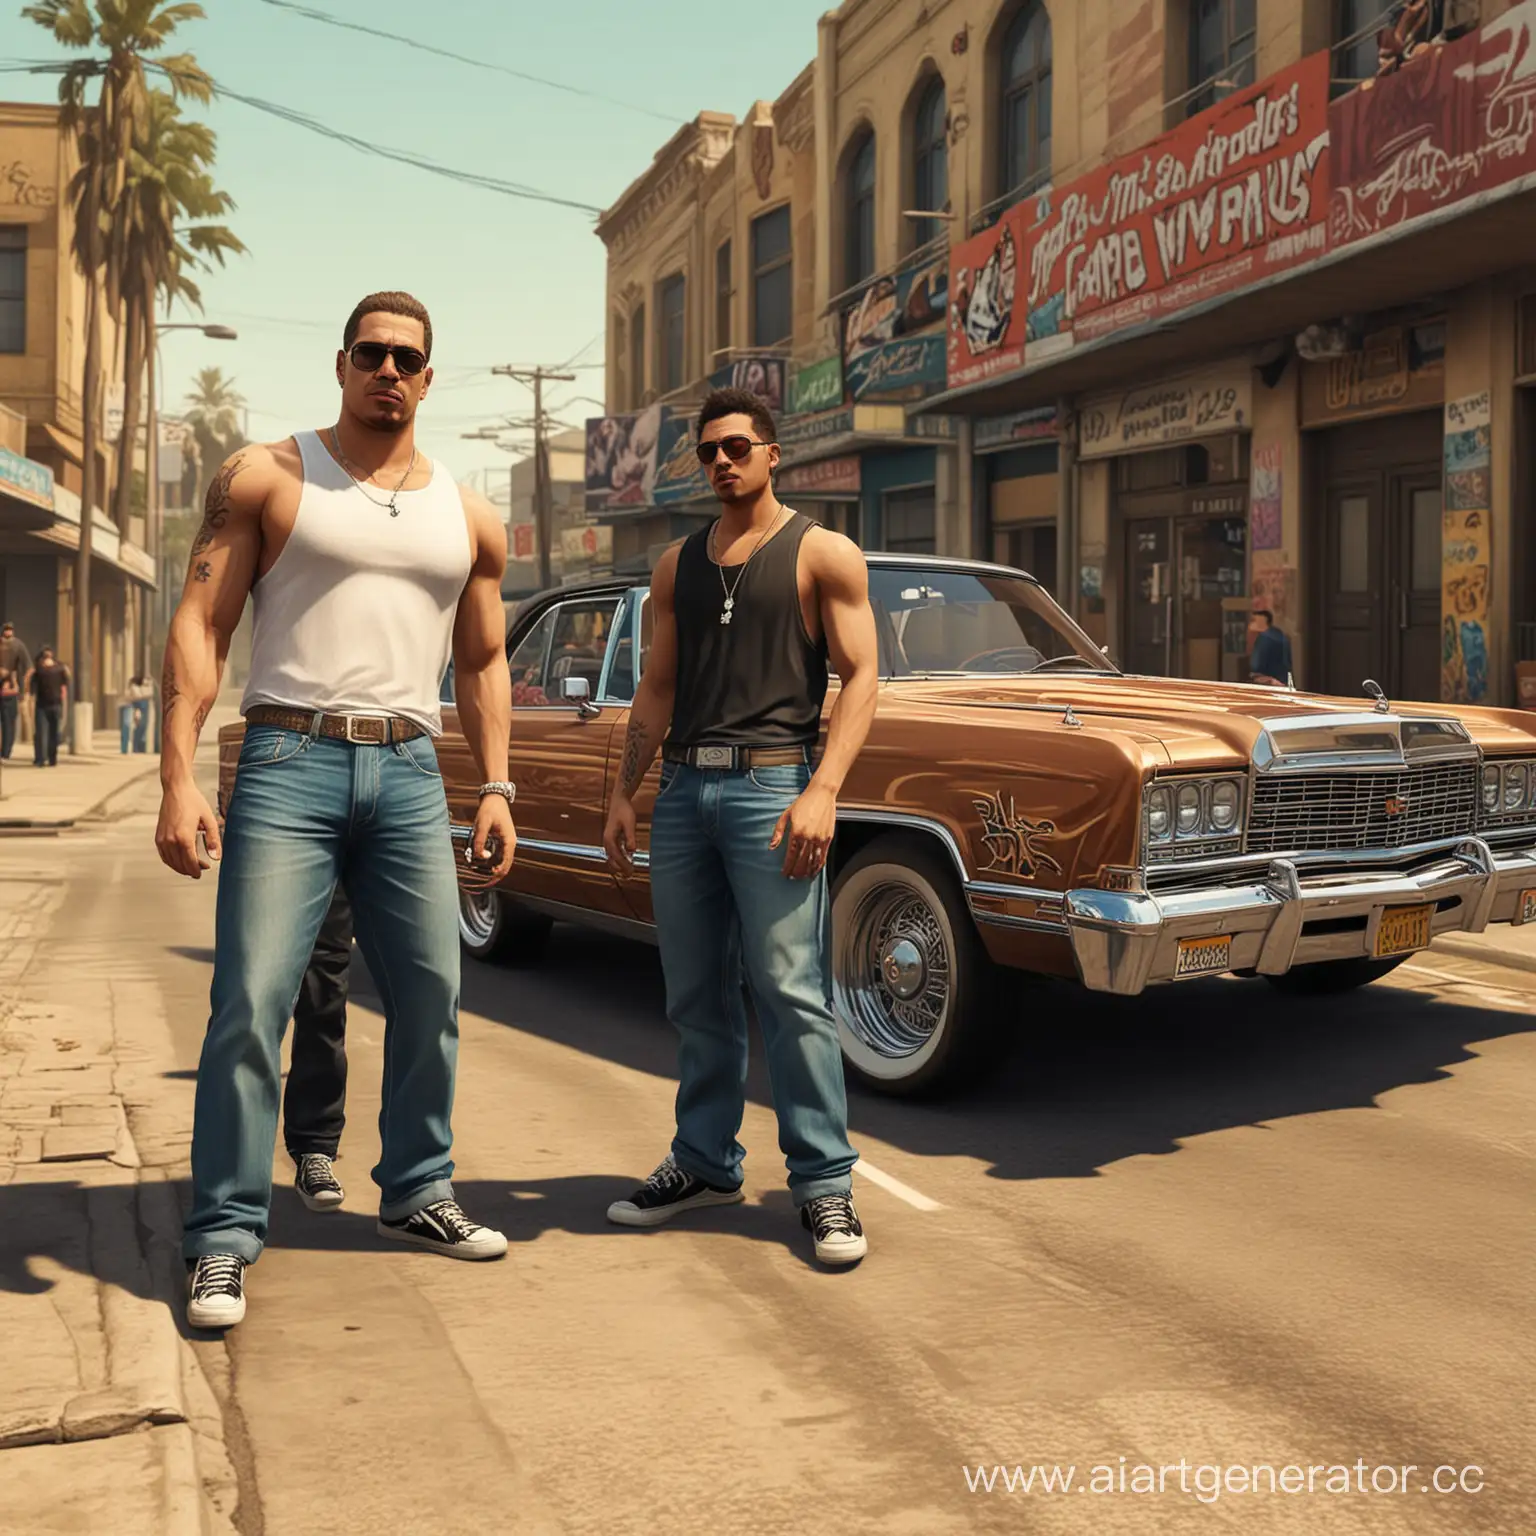 Два парня около лоурайда, картинка в стиле GTA San Andreas